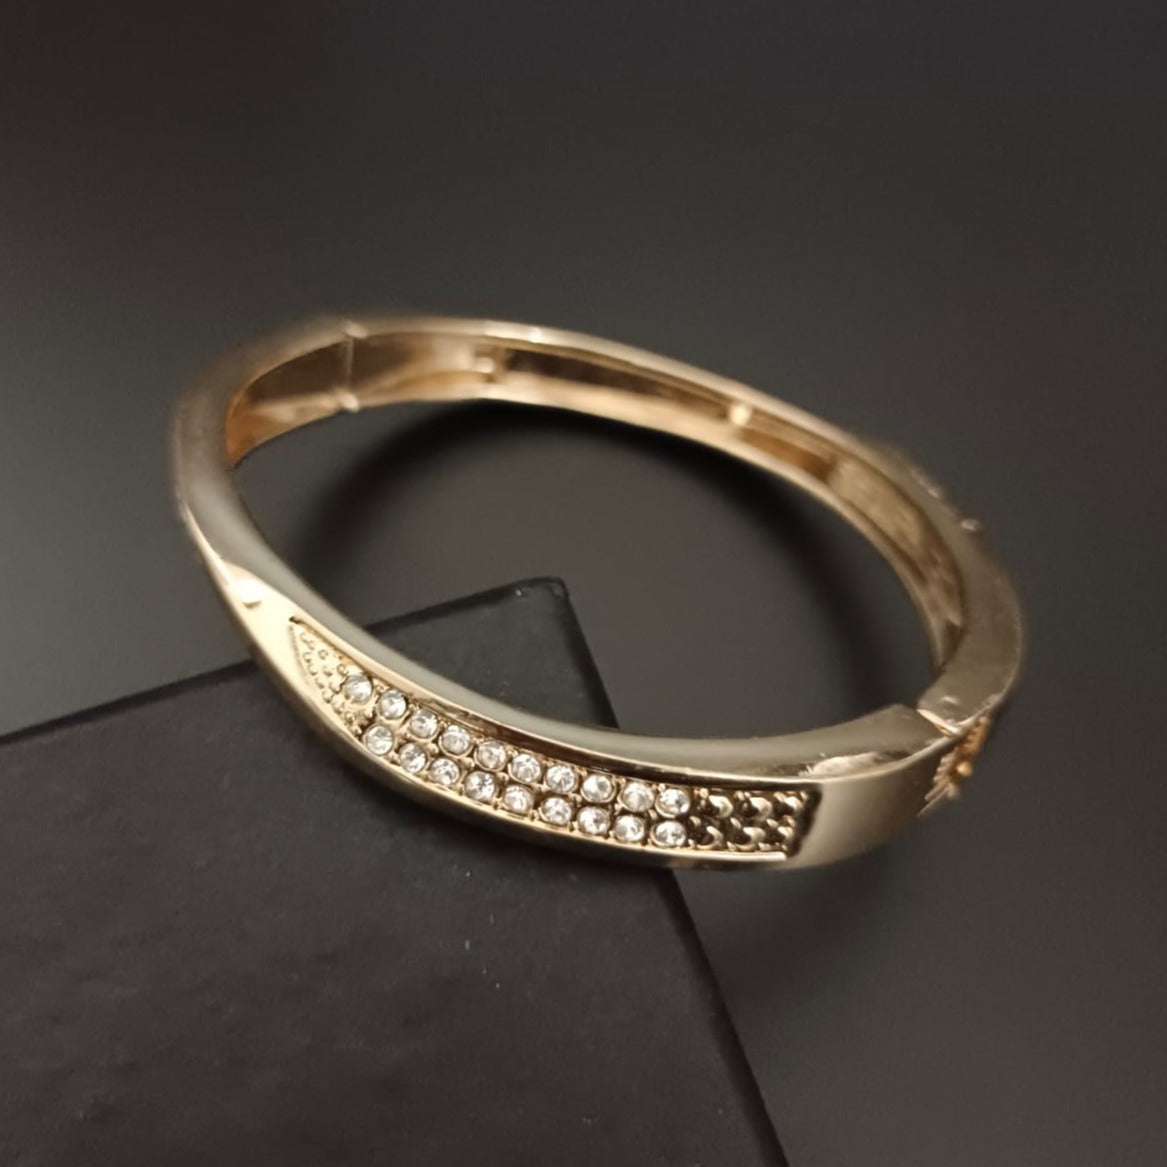 New Gold Diamond Kada Bracelet For Women and Girl-Jack Marc